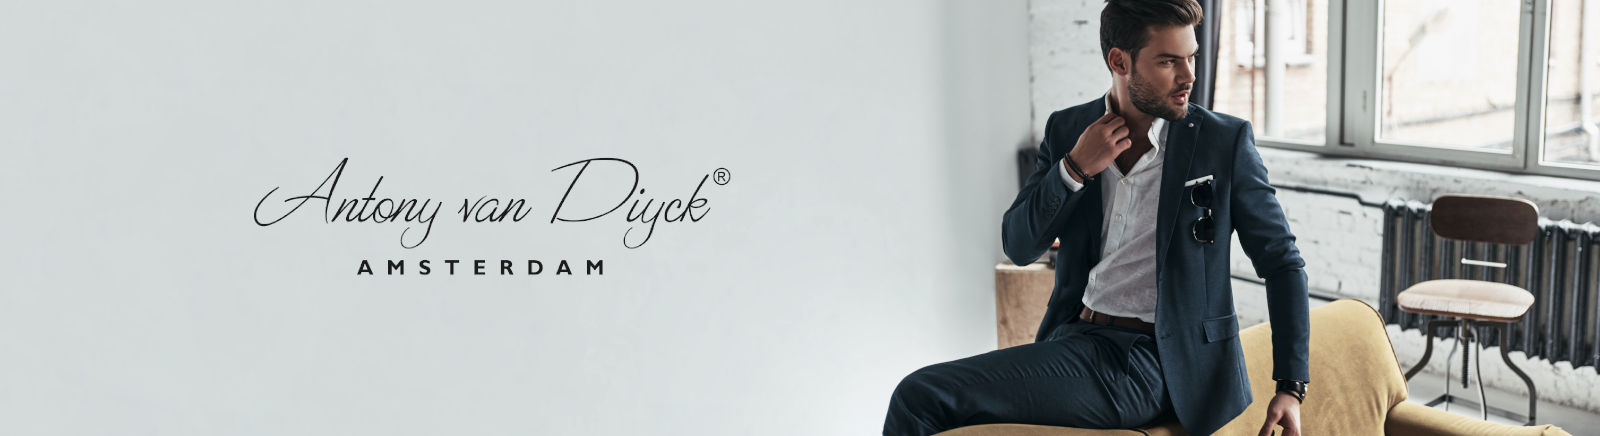 Antony van Diyck Boots für Herren im Online-Shop von GISY kaufen